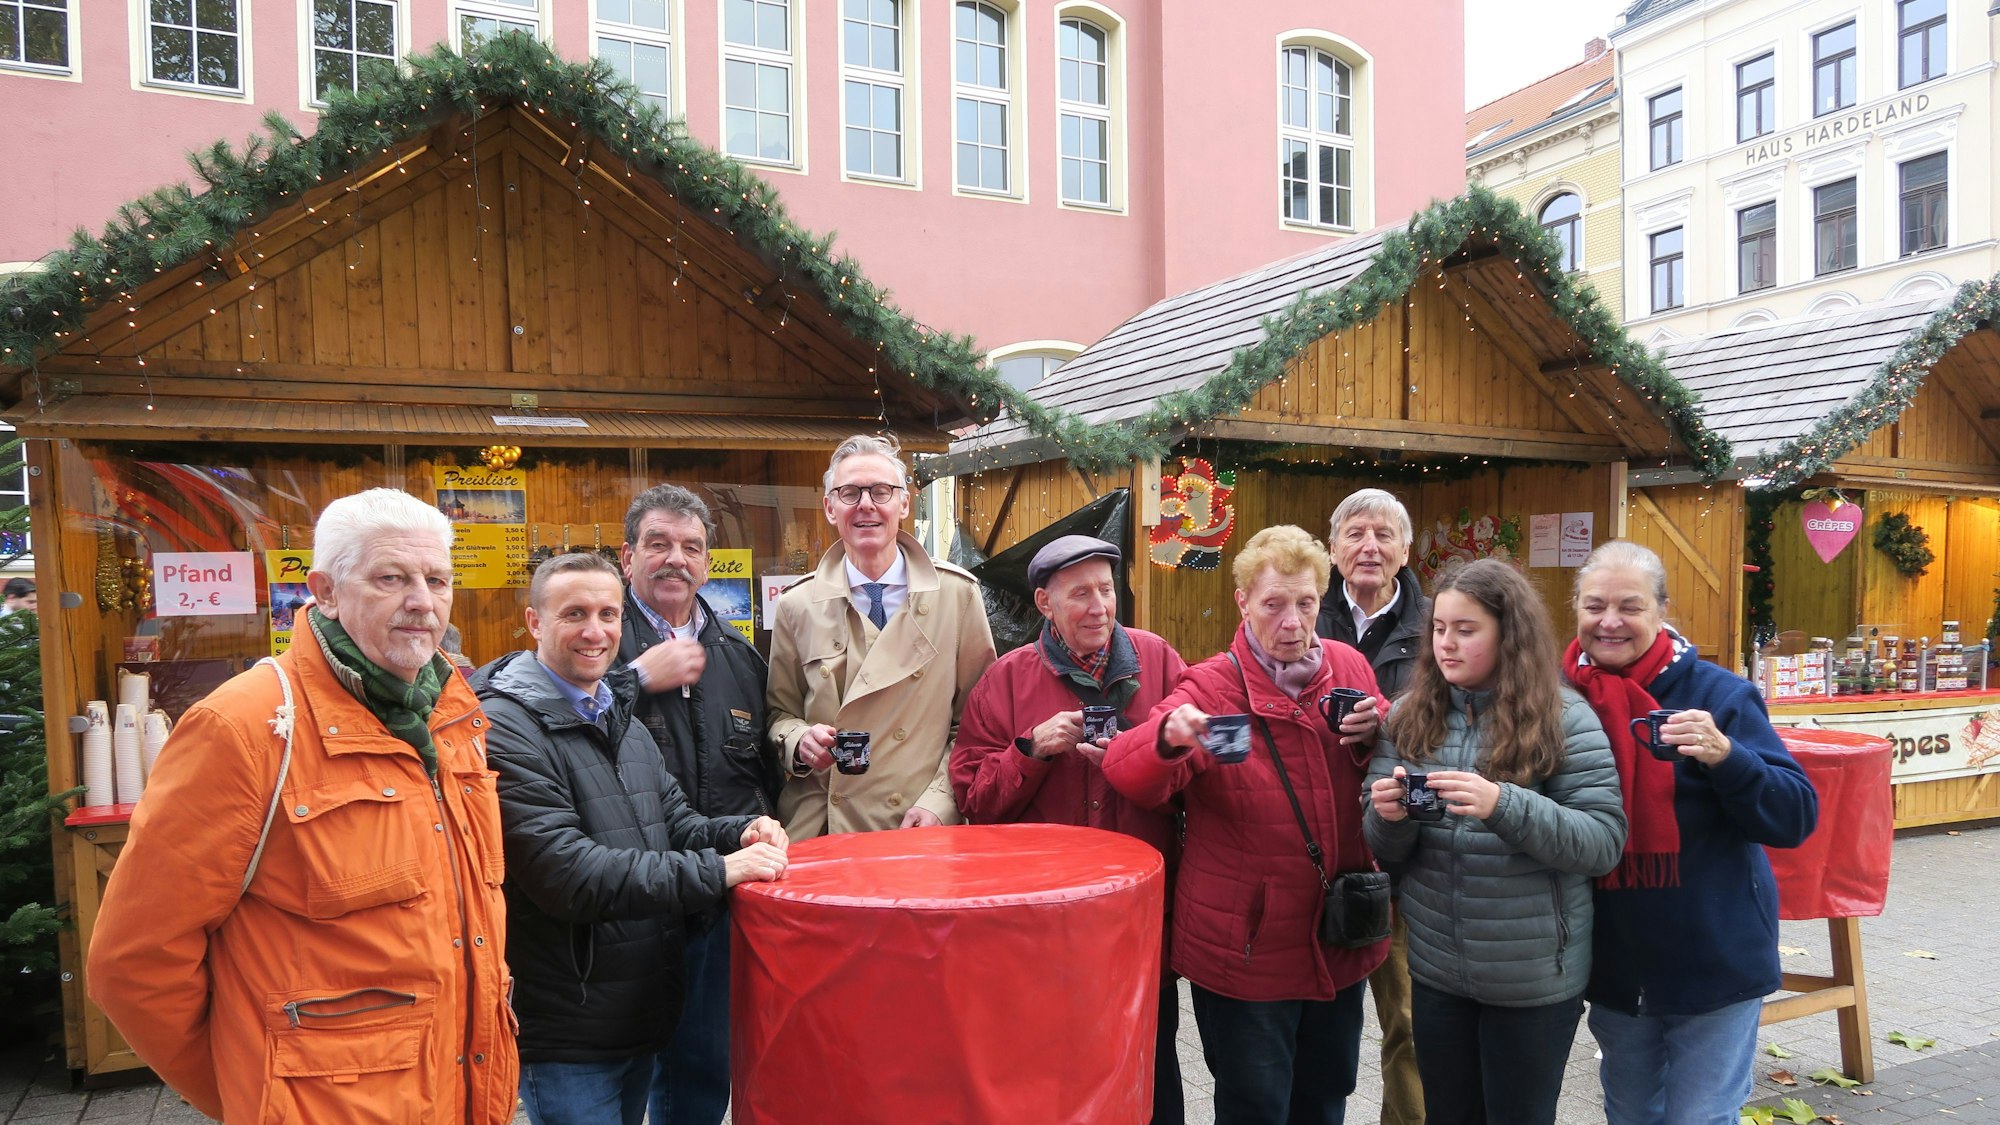 Mitgleider des Bürgervereins, der Standortgemeinschaft und von Karnevalsvereinen trafen sich vor der Kalker Post zu Rievkooche und zum ersten Glühwein der Weihnachtssaison. (Archivbild)